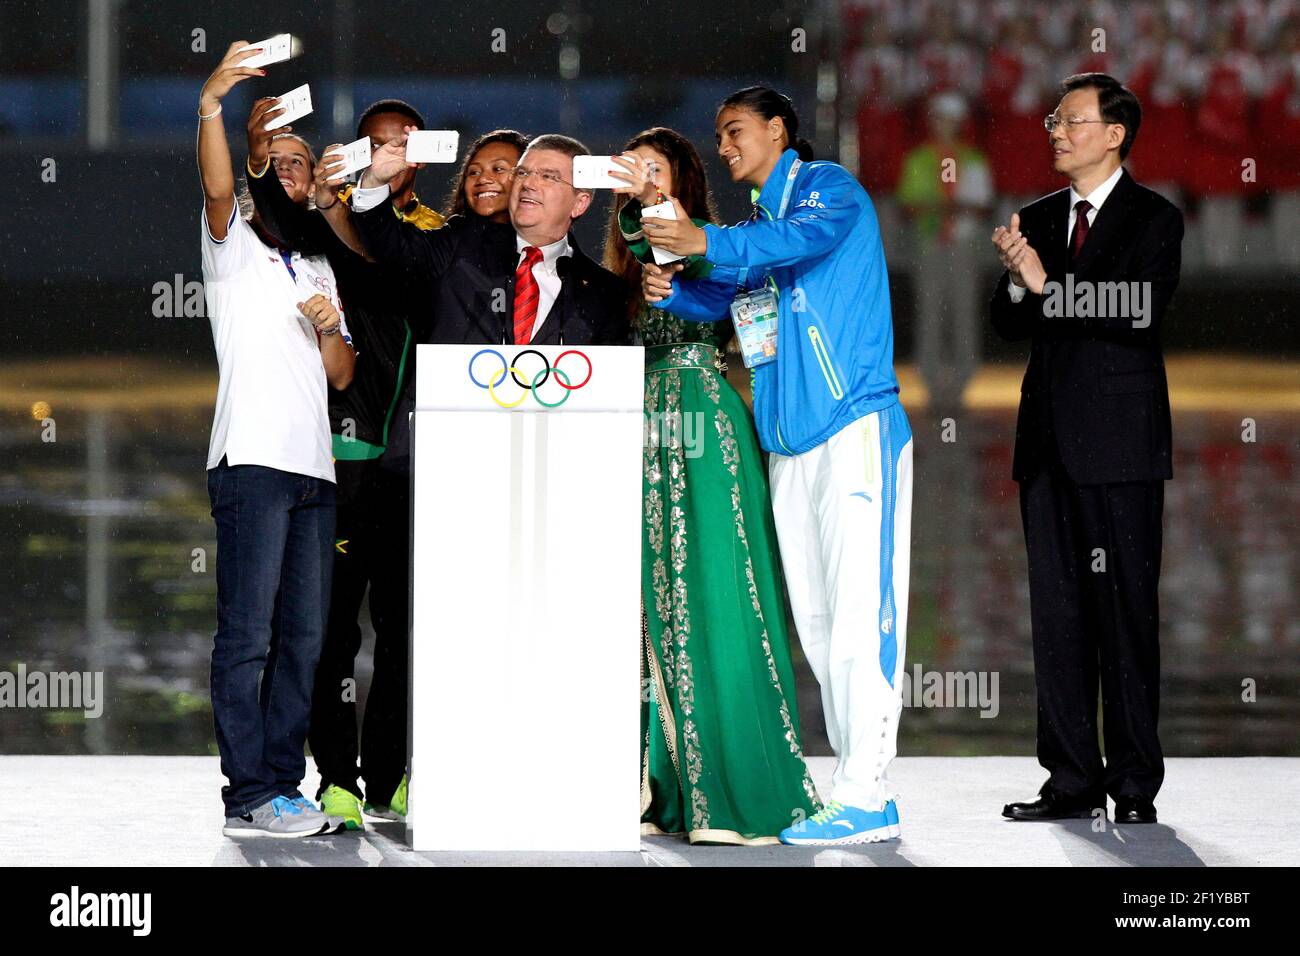 Thomas Bach (GER) Präsident des IOC macht ein Selfie mit Sportlern und NYOGOC Präsident Li Xueyong (CHN) , während der Eröffnungsfeier der 2014 Olympischen Jugendspiele in Nanjing, der ostchinesischen Provinz Jiangsu, Tag 1, am 16. August 2014. Foto Eddy Lemaistre / KMSP / DPPI Stockfoto